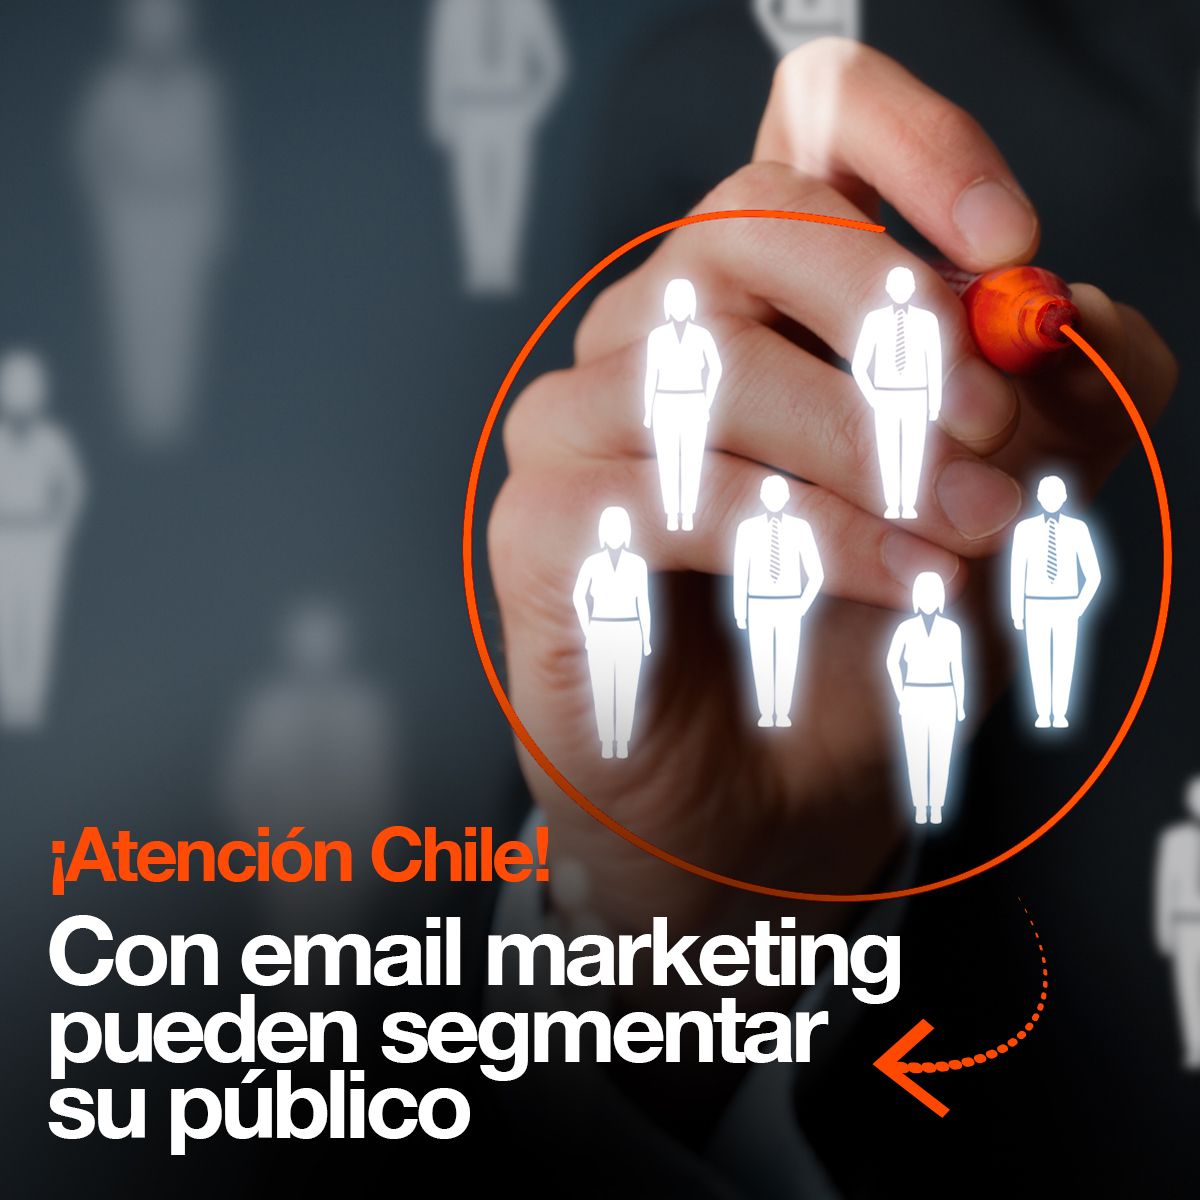 ¡Atención Chile! Con email marketing pueden segmentar su público